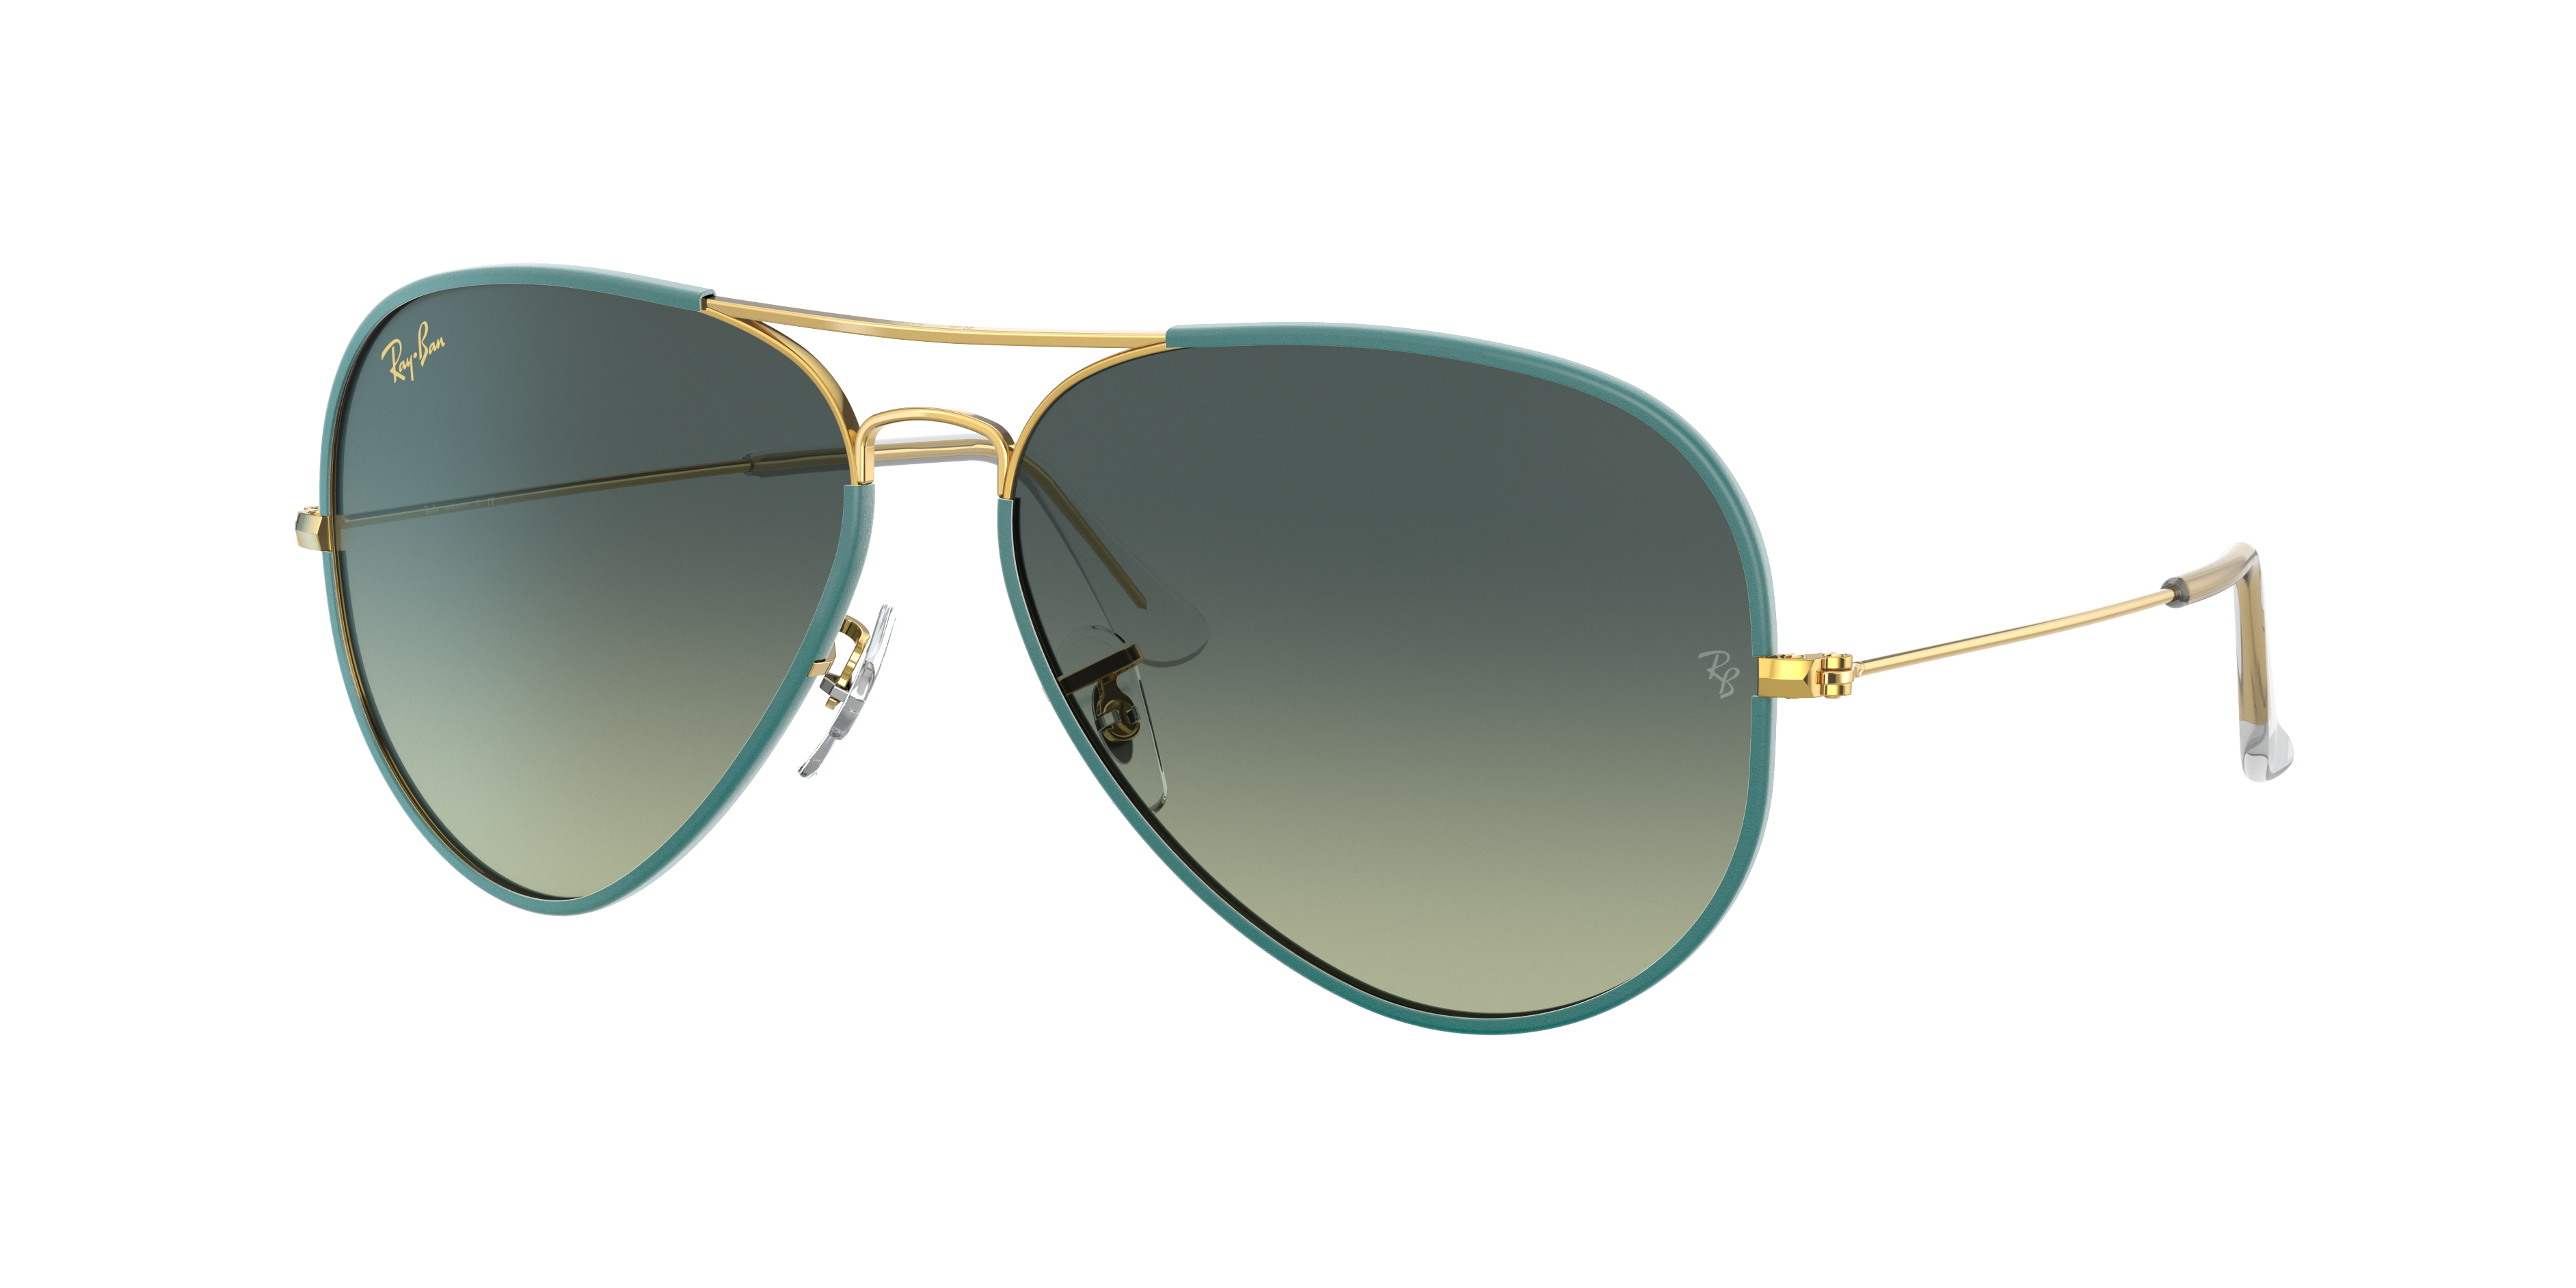 Ray Ban Aviator Full Color Legend Sunglasses Gold Frame Green Lenses 58-14